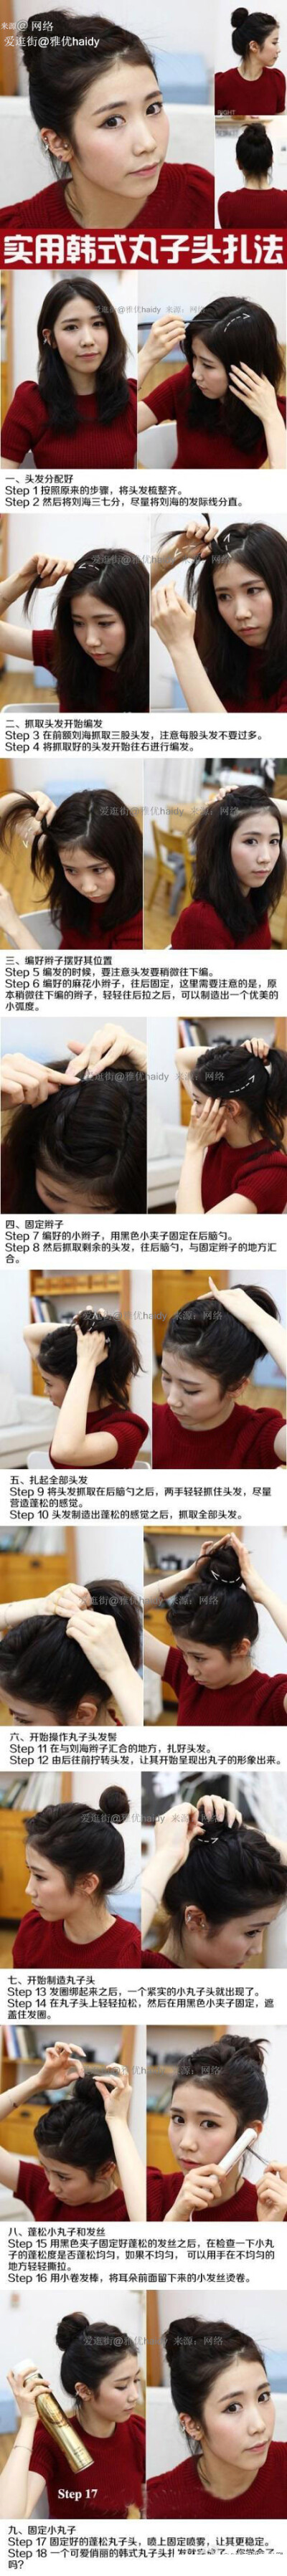 教你打造漂亮、实用的韩式丸子头。丸子头 发型 美发 时尚 diy